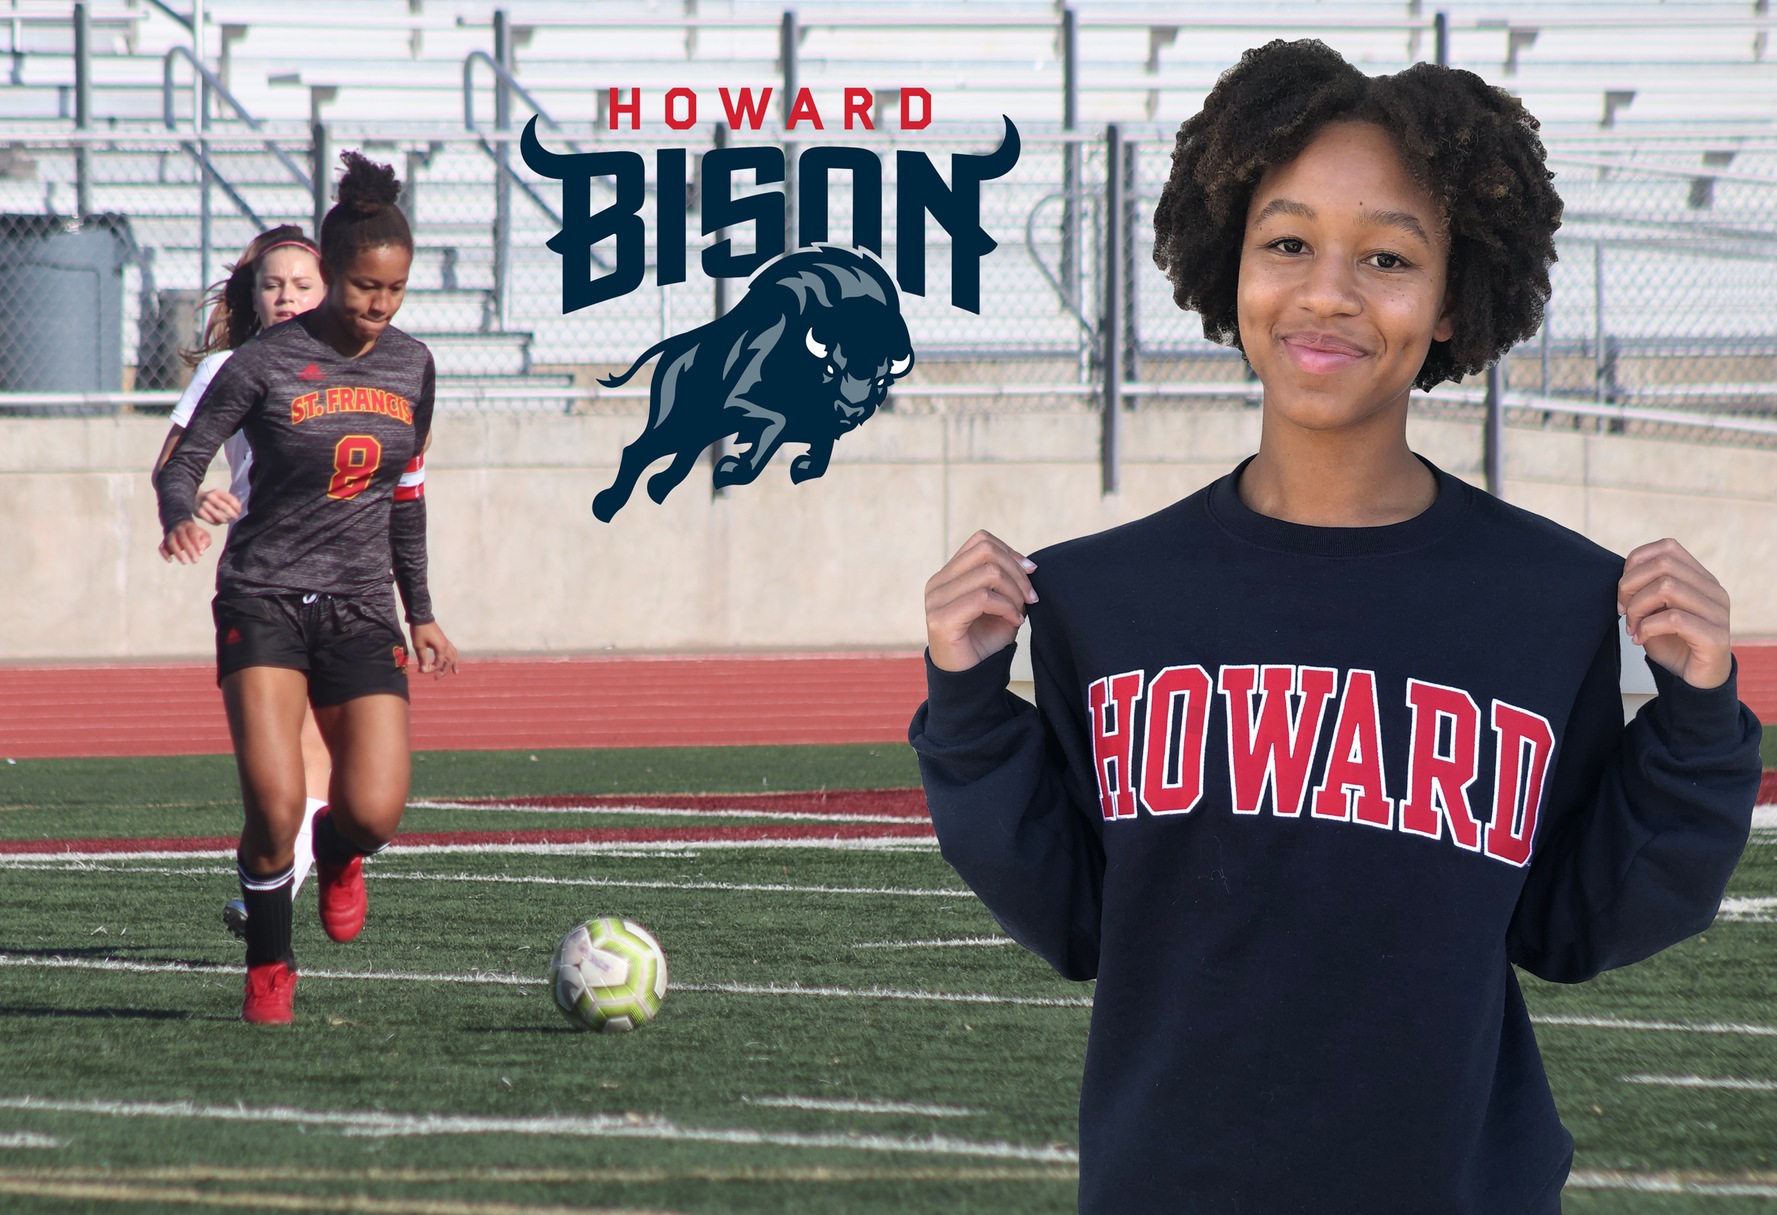 Soccer’s Marli Berry to Play at Howard University